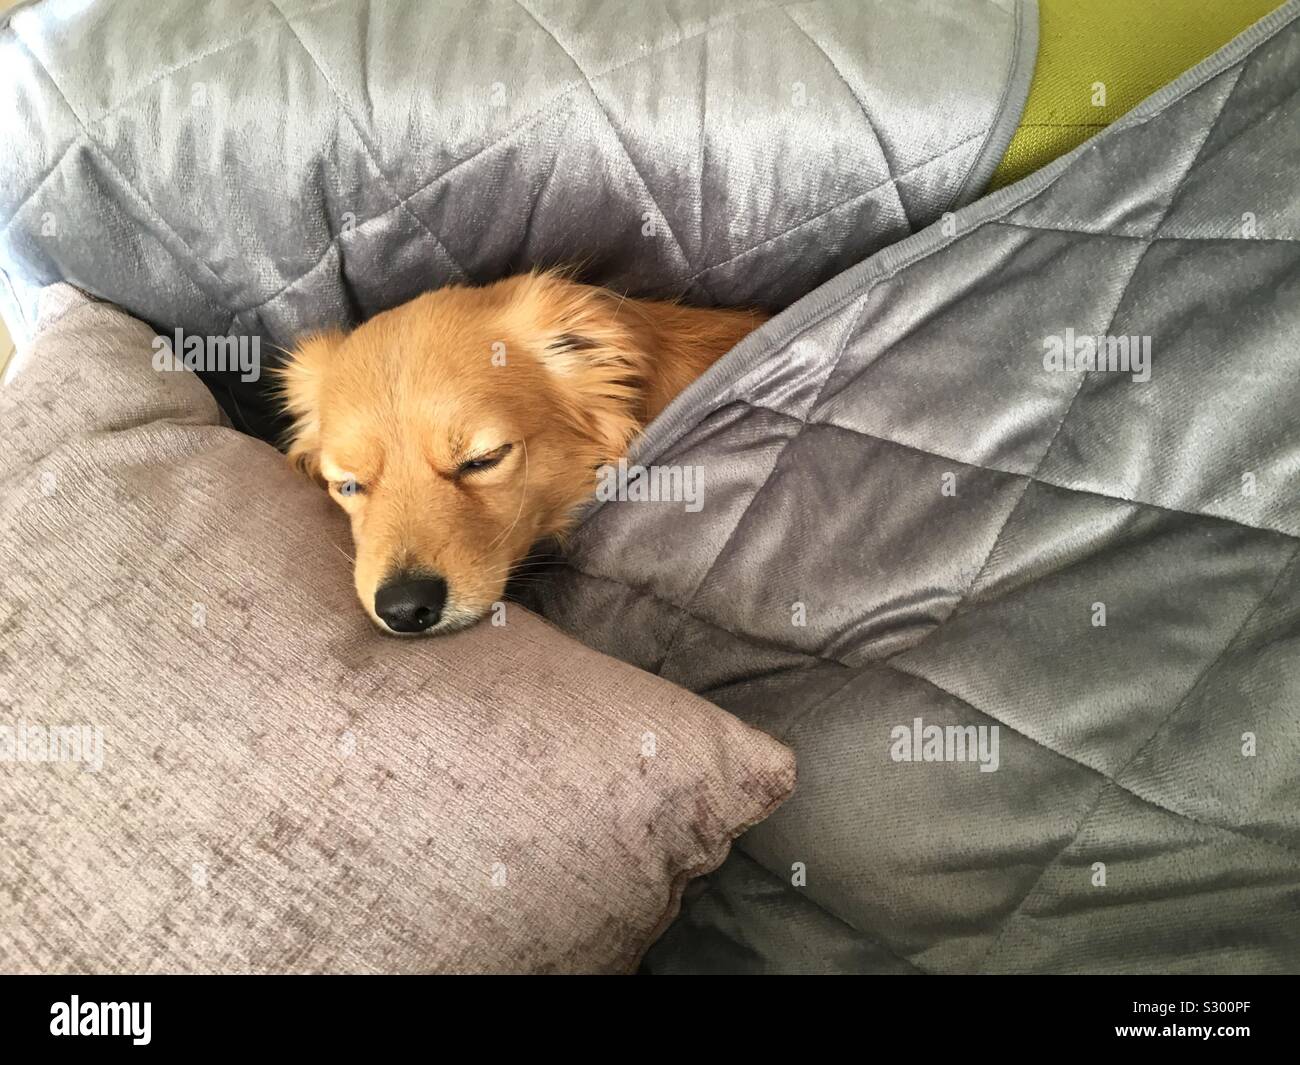 Sleeping carino golden cane sotto il grigio-argento coperta. Sognando così dolce. Da qualche parte in Europa. Foto Stock